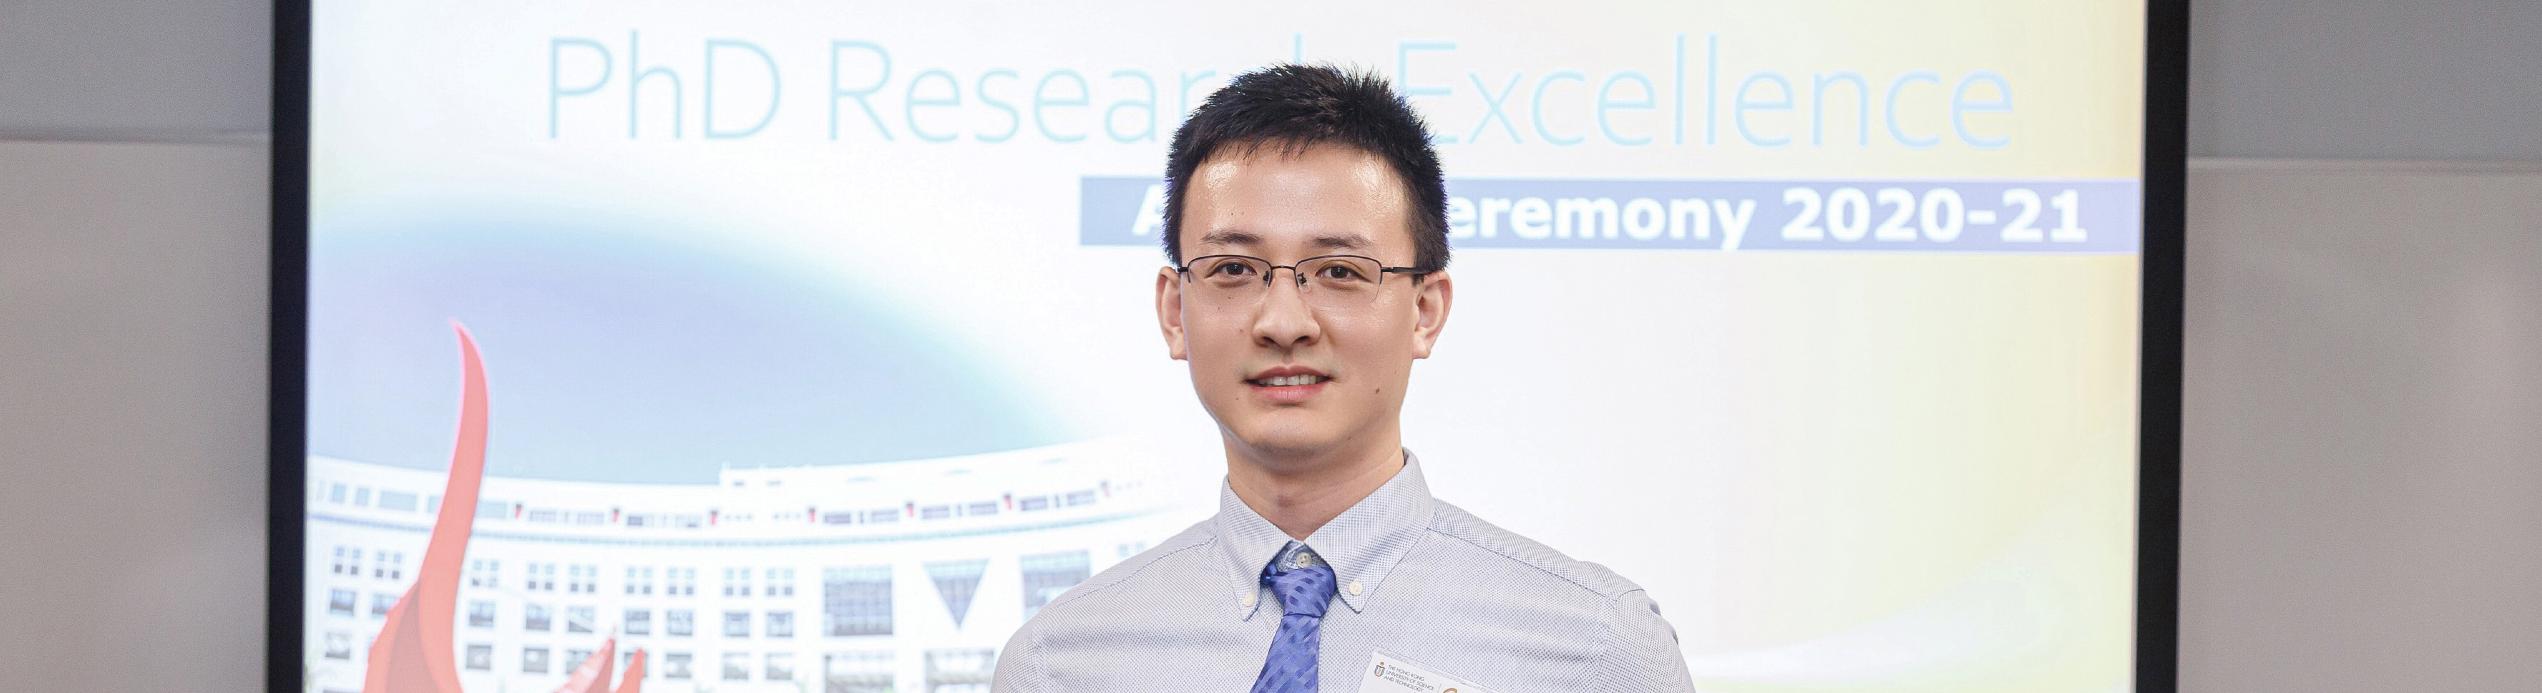 在颁奖典礼上，殷冉博士与其他研究生分享了他在科大工程研究路途上的宝贵经验。